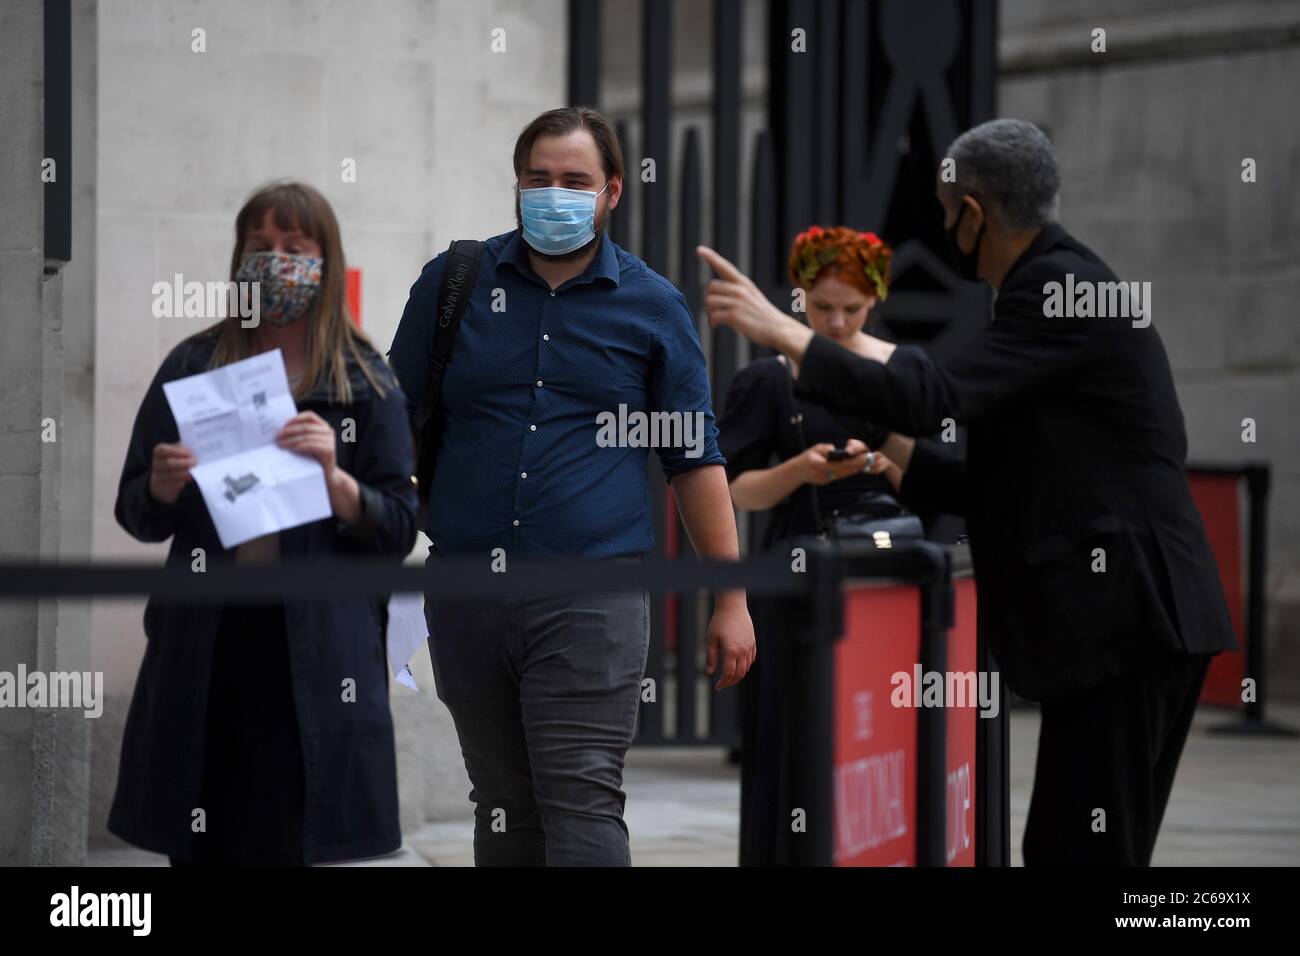 Les gens qui se trouvent à la National Gallery de Londres qui ouvre après des mois de fermeture après la levée de nouvelles restrictions de verrouillage du coronavirus en Angleterre. Banque D'Images